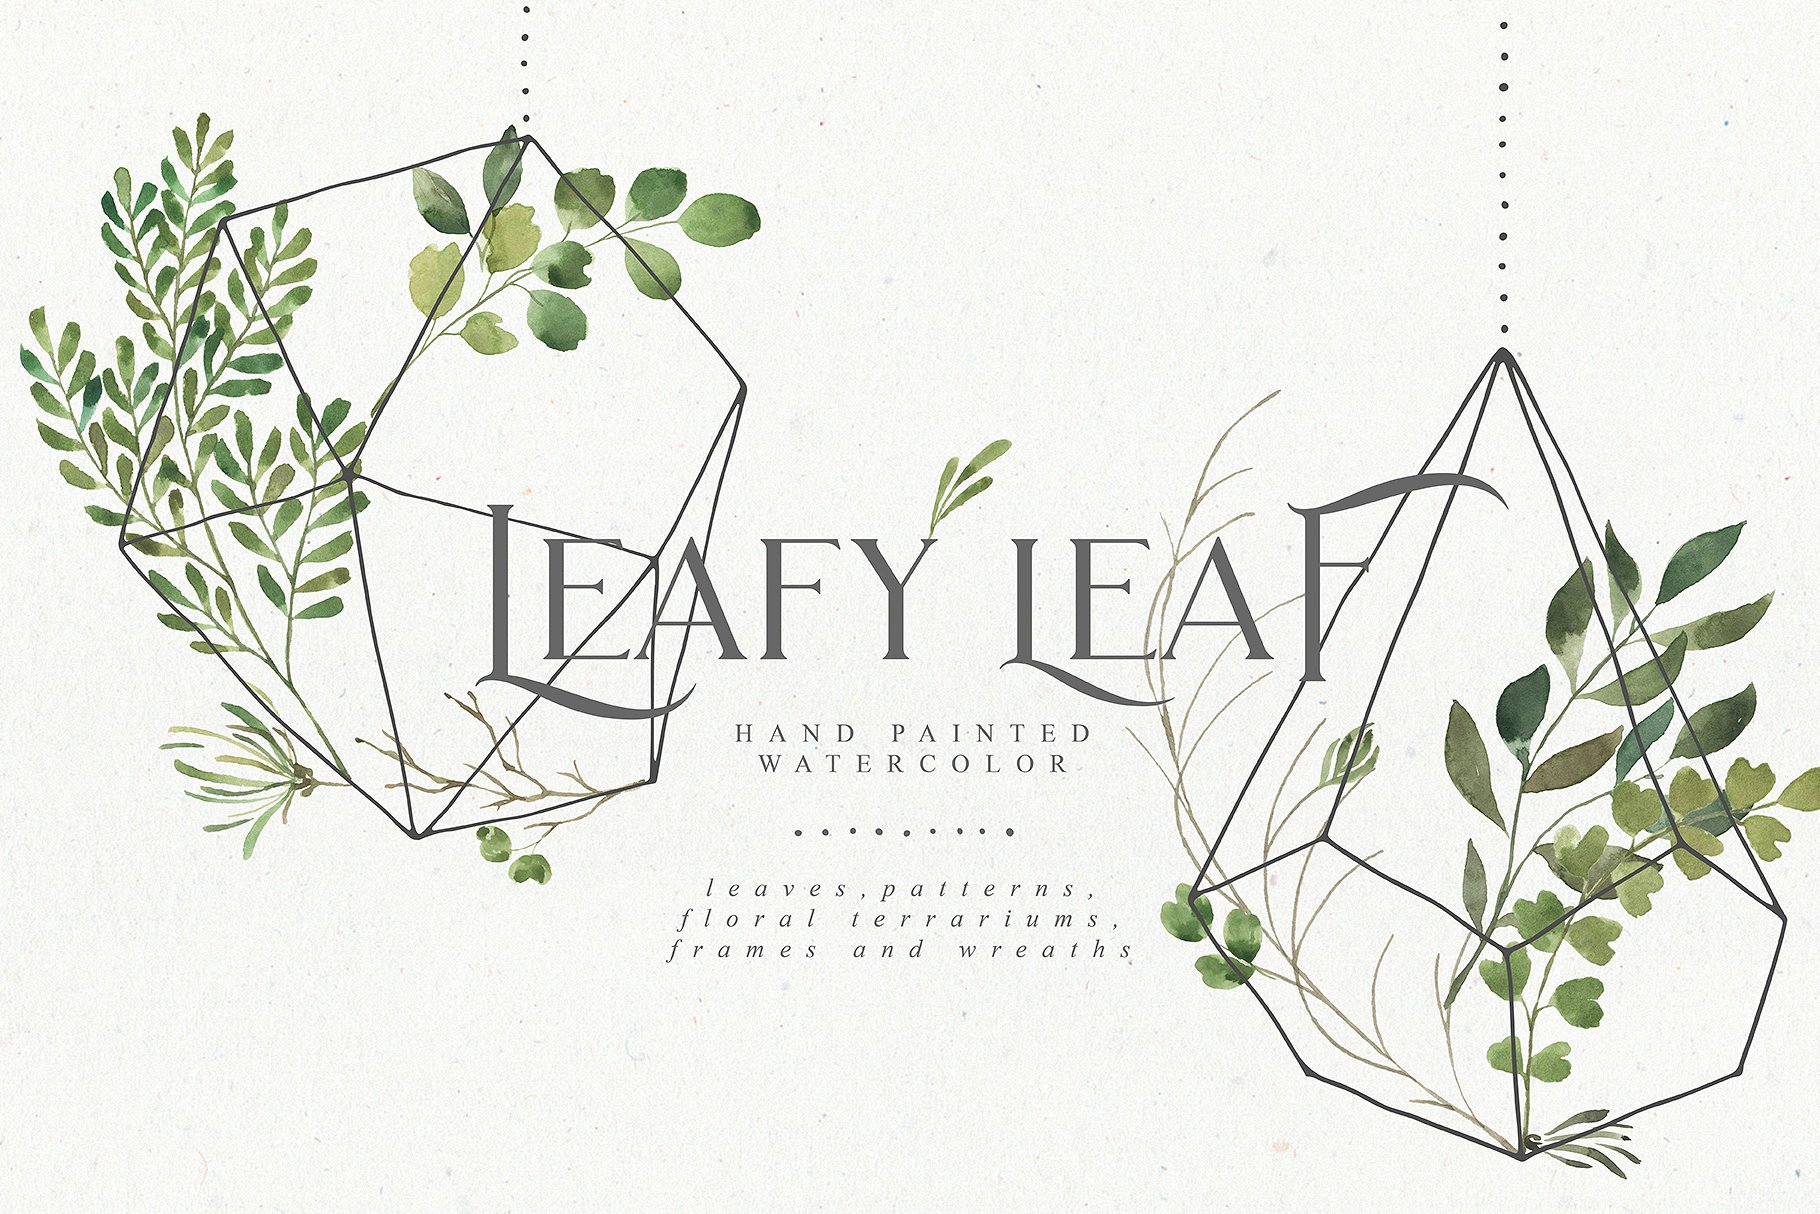 繁茂的水彩树叶元素、相框、纹理素材包 Leafy Leaf